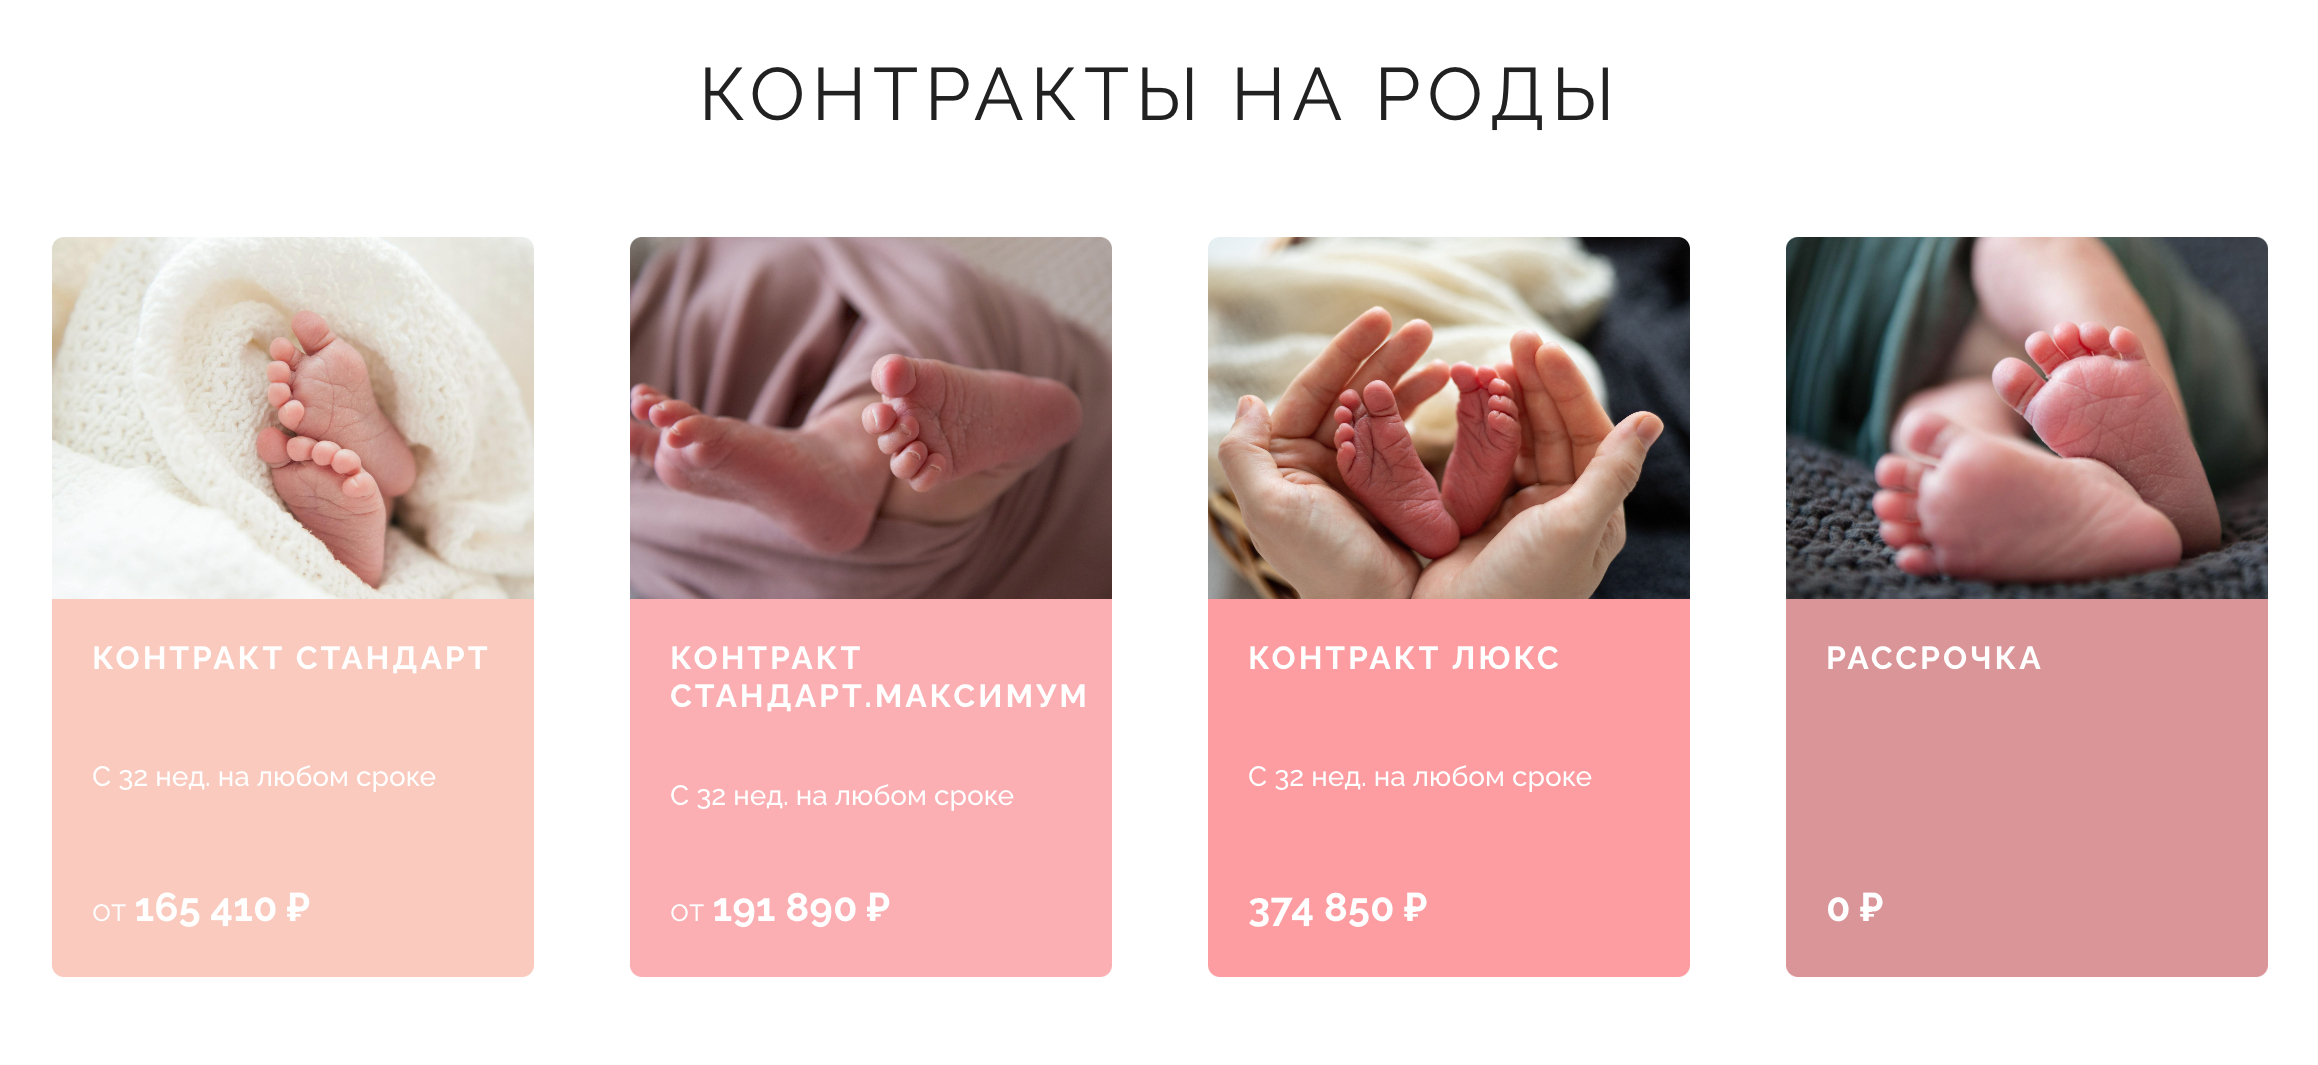 Стоимость контрактов на роды в госпитале «Мать и дитя» в Тюмени. Источник: rodivtyumeni.ru